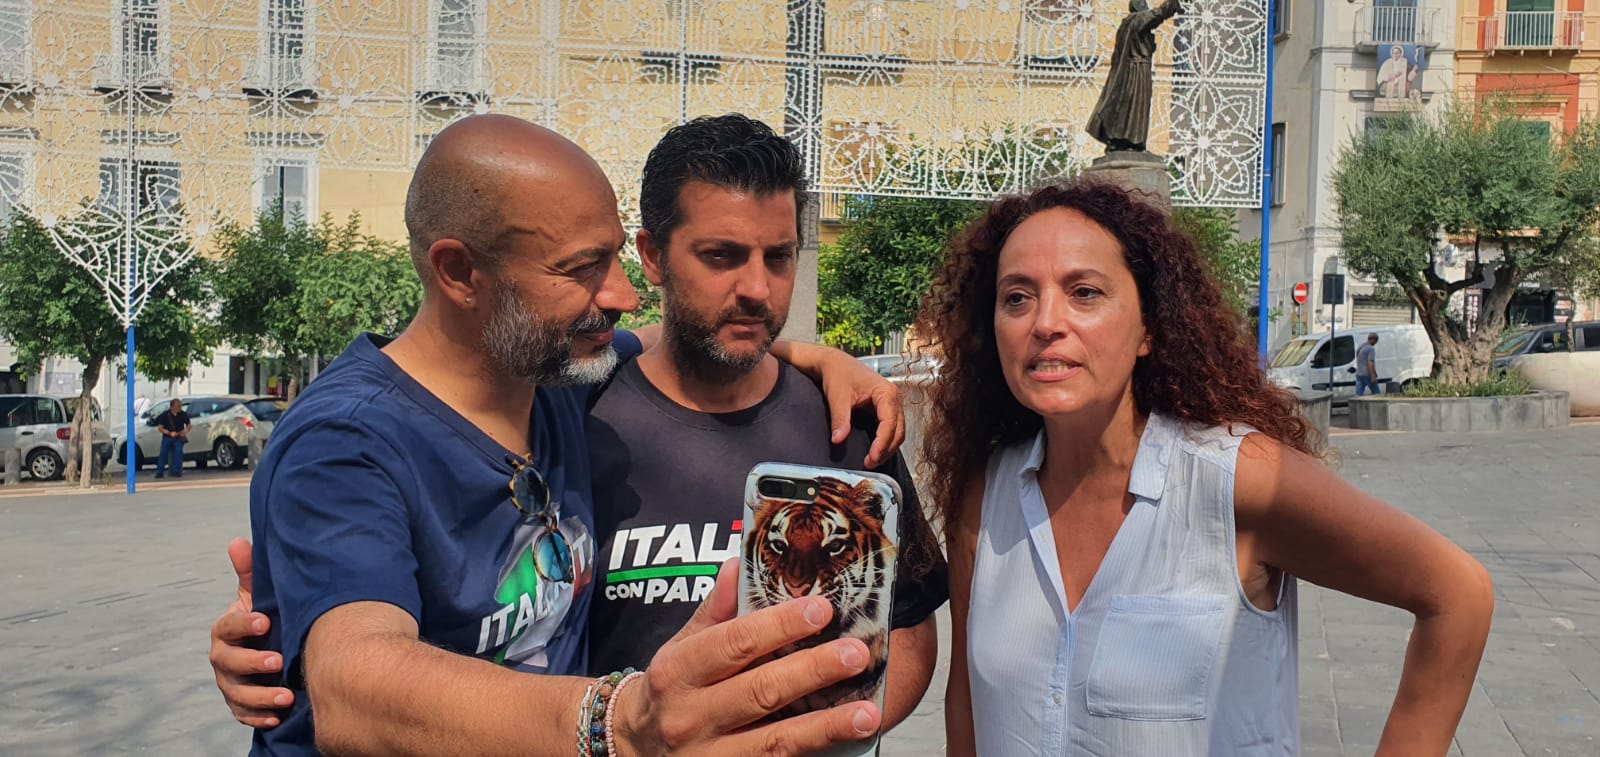 Stefania Aversa Italexit: Rispondo All’appello Di Italia Libera 